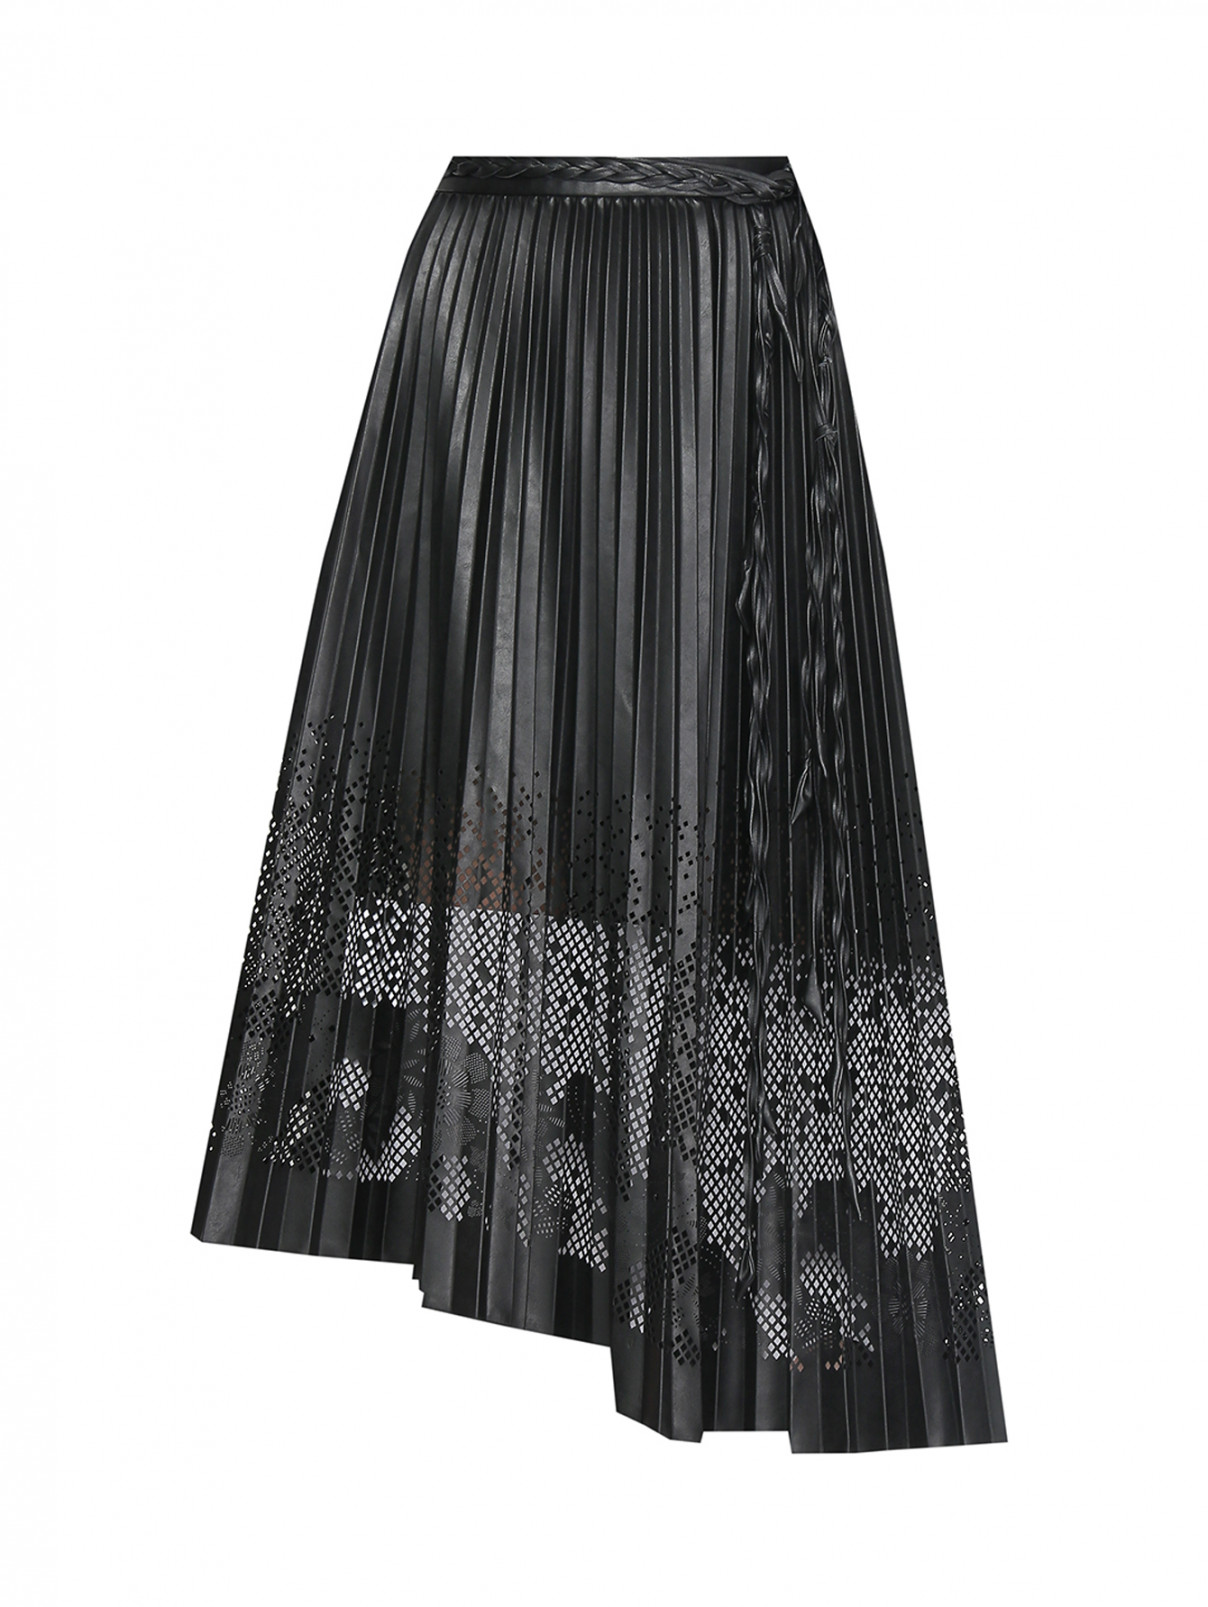 Плиссированная юбка с перфорацией Ermanno Scervino  –  Общий вид  – Цвет:  Черный